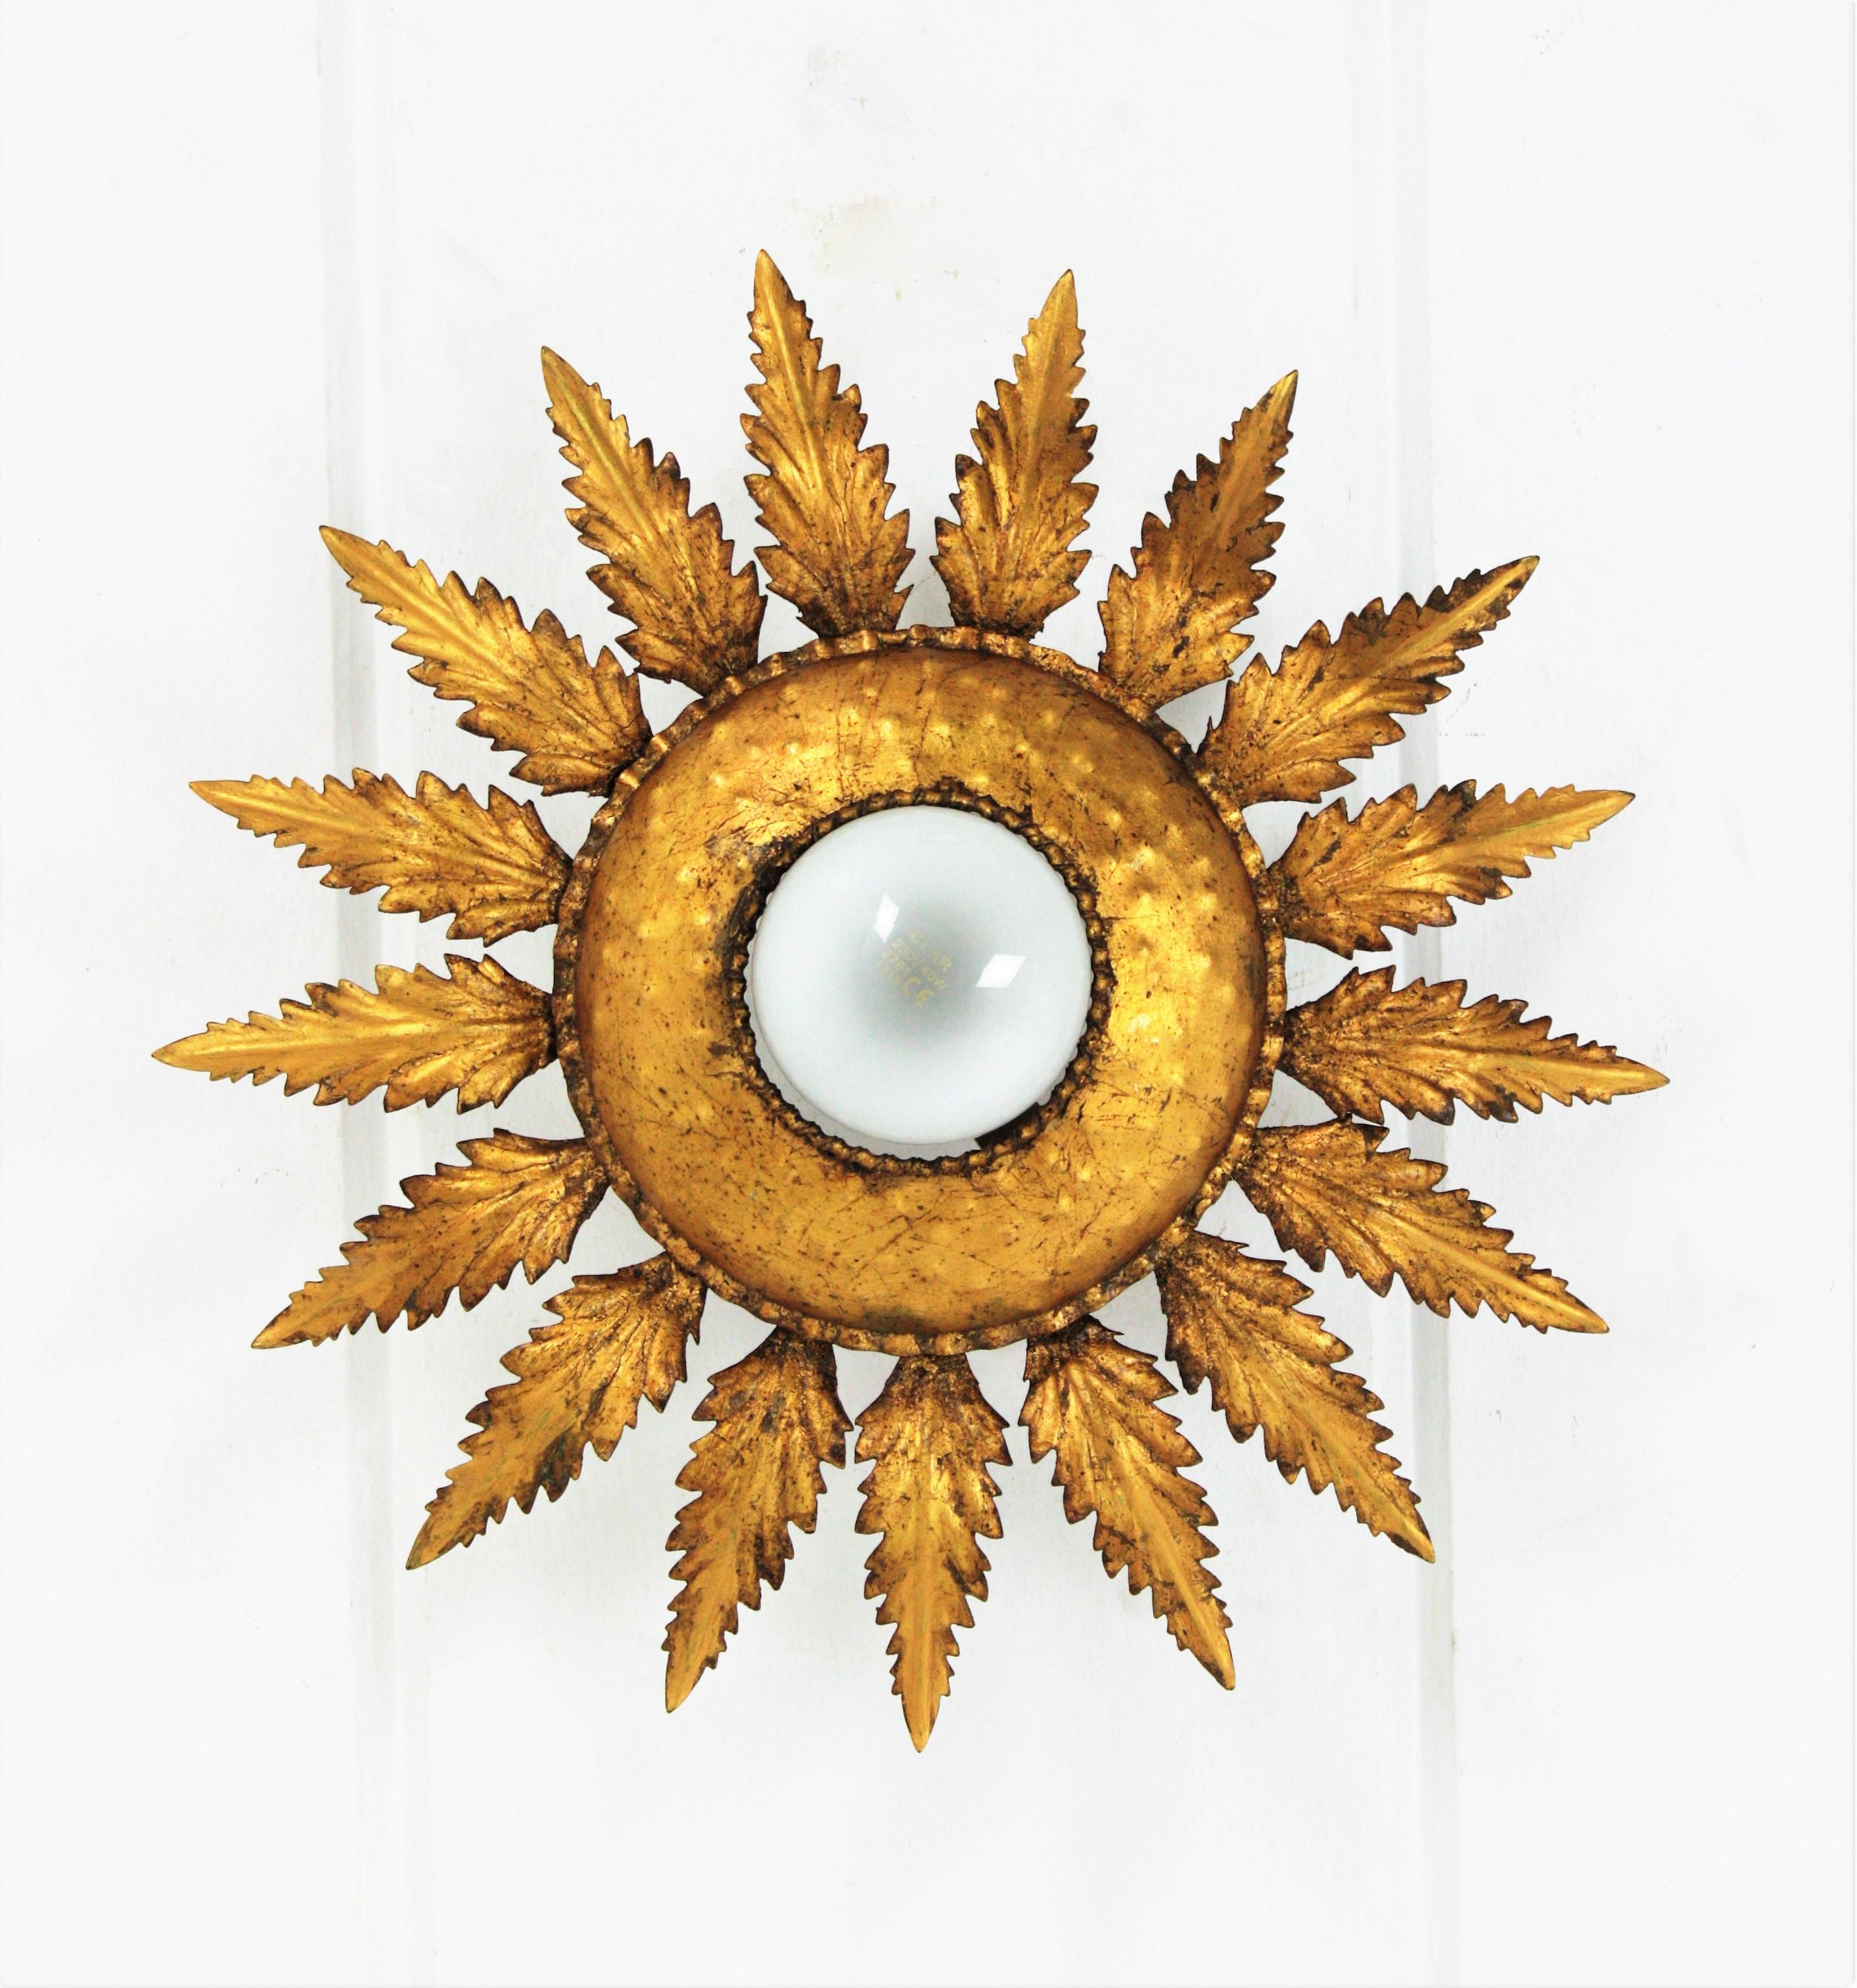 Monture encastrée en forme de fleur de soleil, fer doré, années 1950.
Ce plafonnier présente un cadre de feuilles entourant une ampoule centrale exposée. Fabriqué à la main en fer et doré à la feuille d'or. Il a une belle patine.
Ce luminaire en